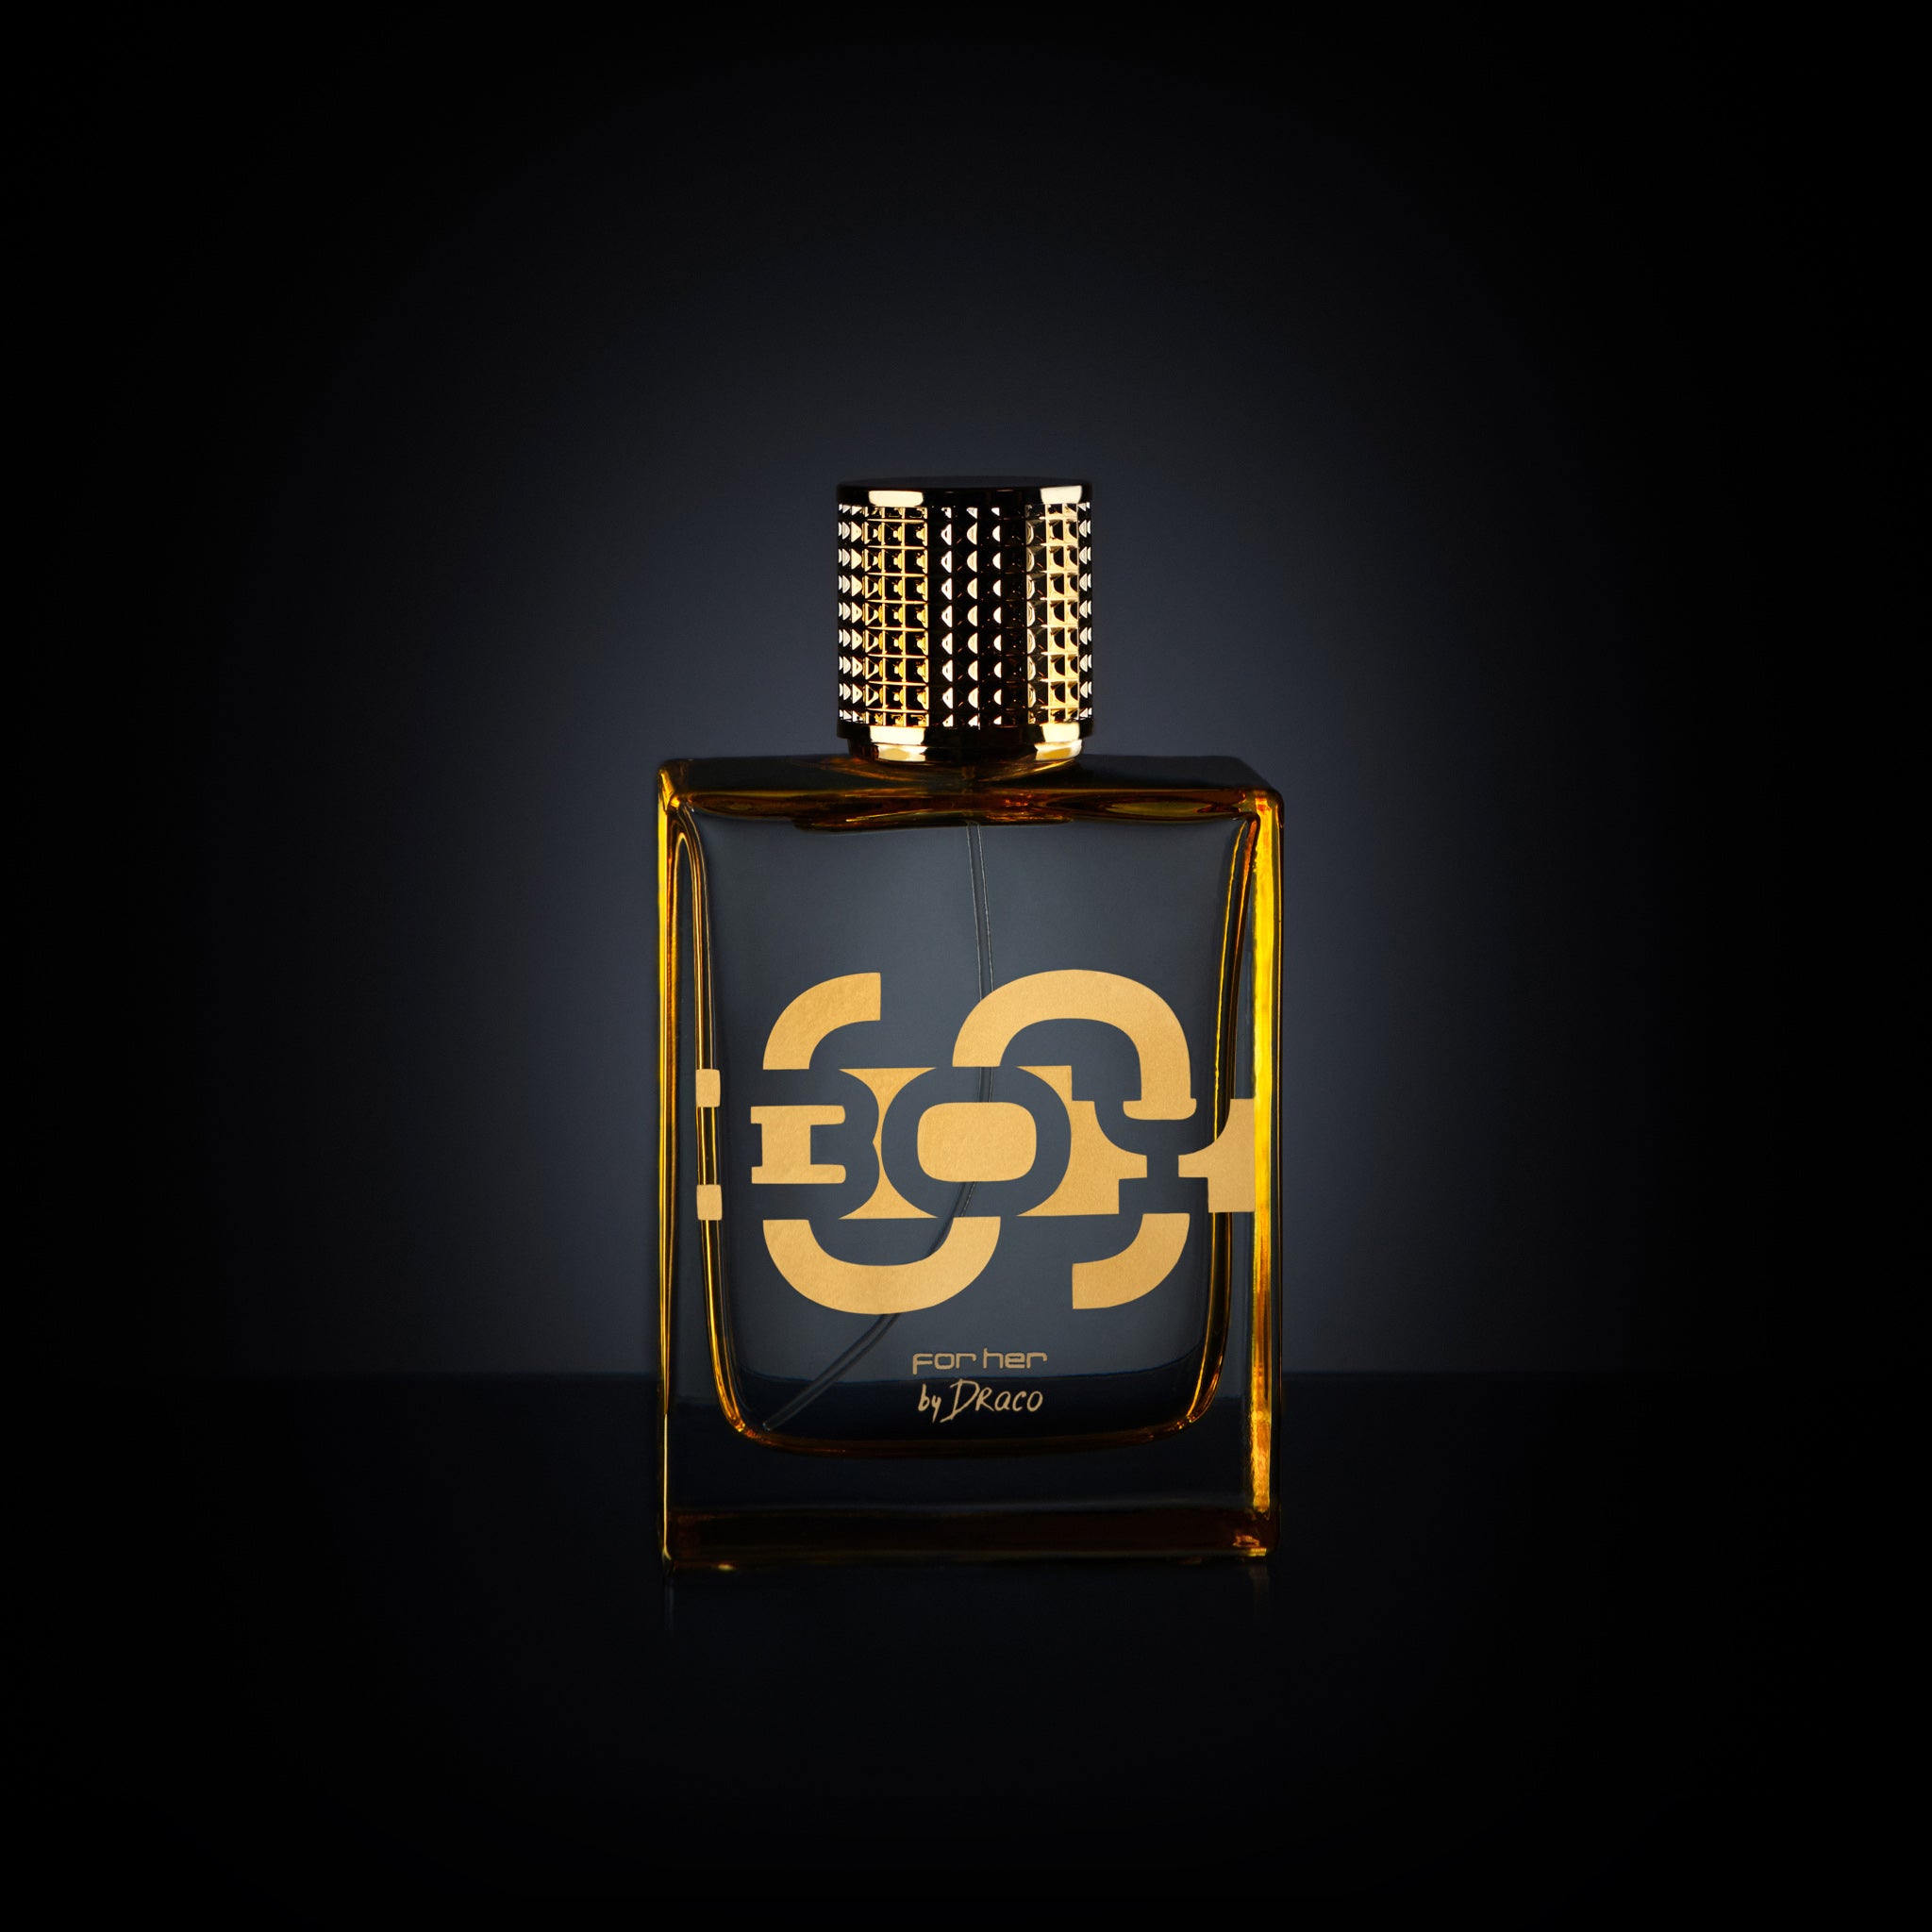 SBOY For Her eau de parfum. SBOY By Draco fragrance for women from Soulja Boy. Perfume bottle.